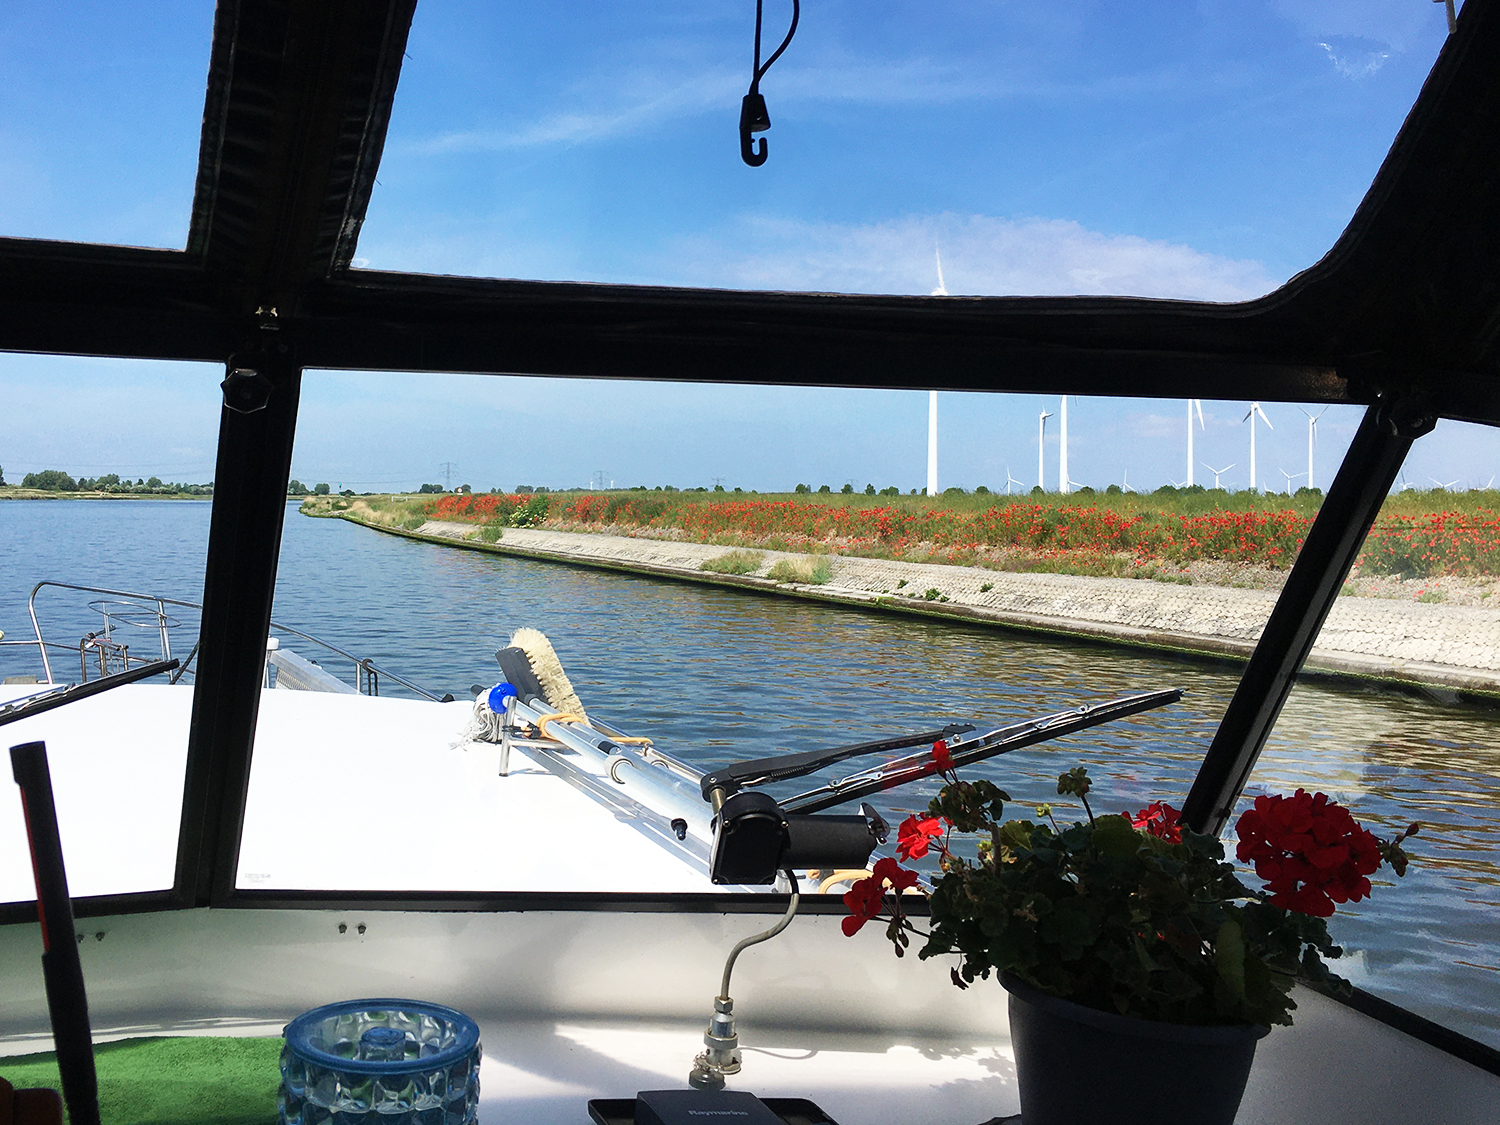 Entlang der Schelde-Rijn-Verbinding sind immer wieder leuchtendrote Mohnfelder zu sehen, dahinter Windkraftanlagen; Blick vom Steuerstand der Yacht